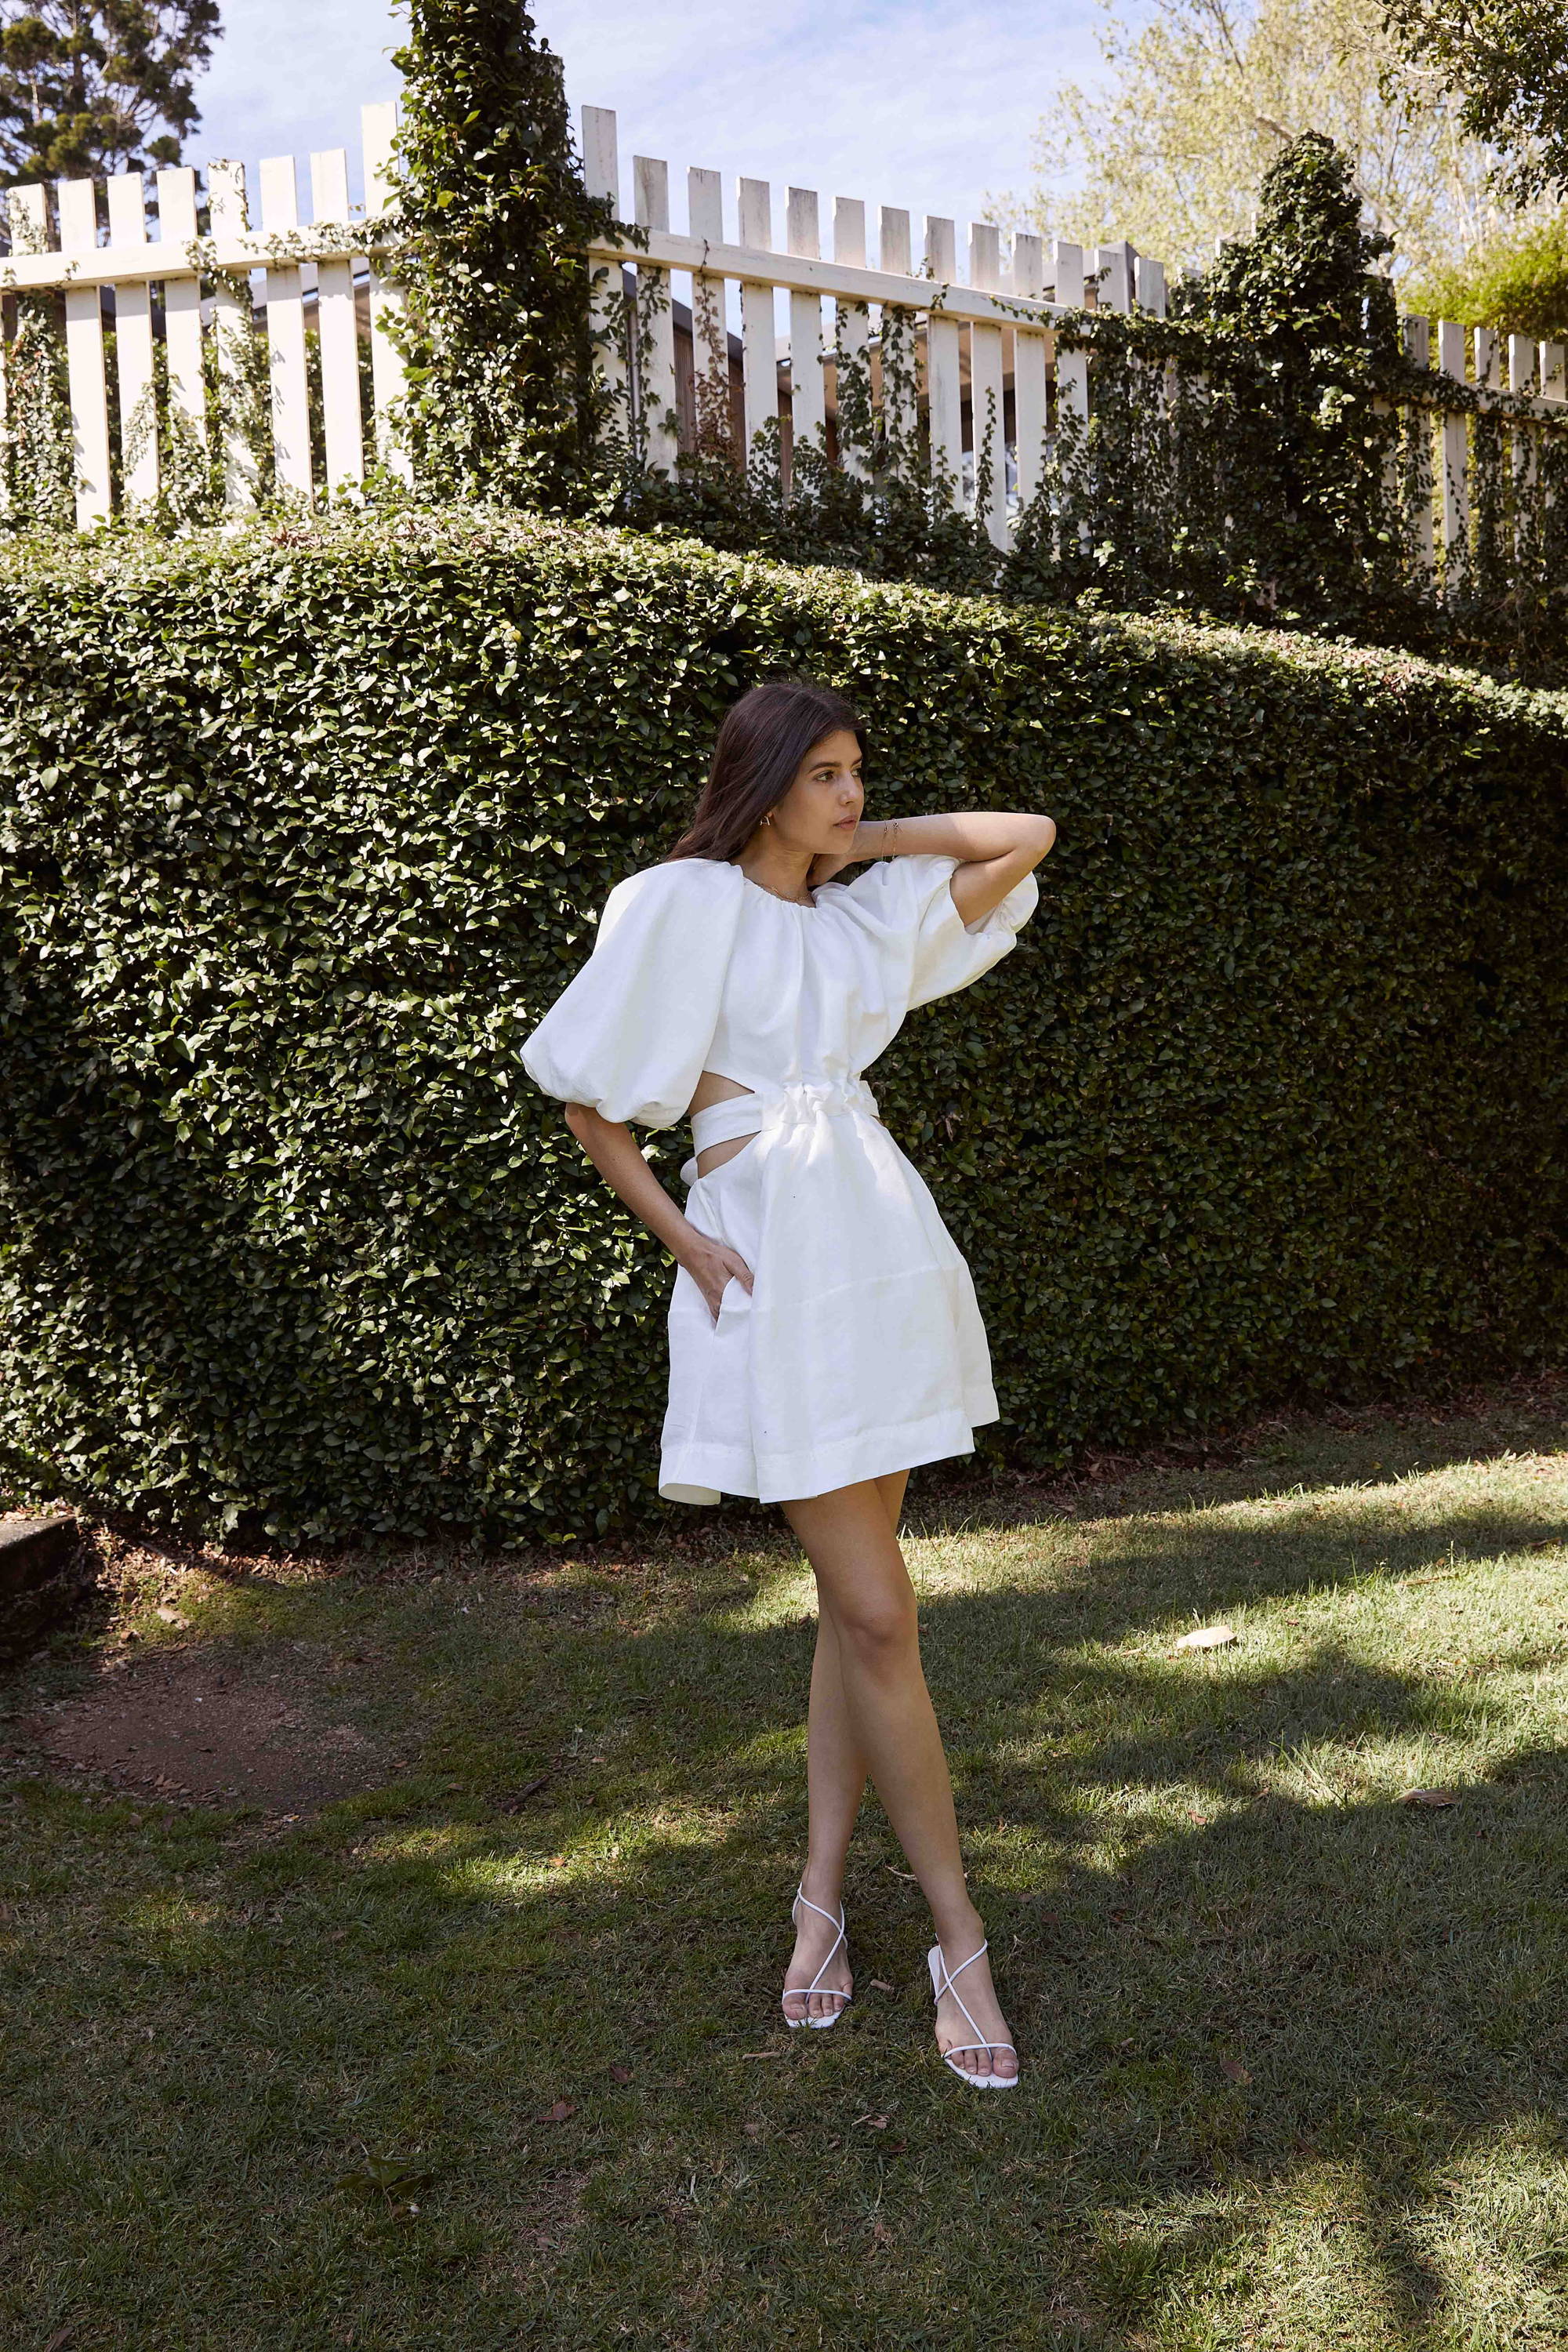 Talisa Sutton wears an Aje white mini dress in the garden.